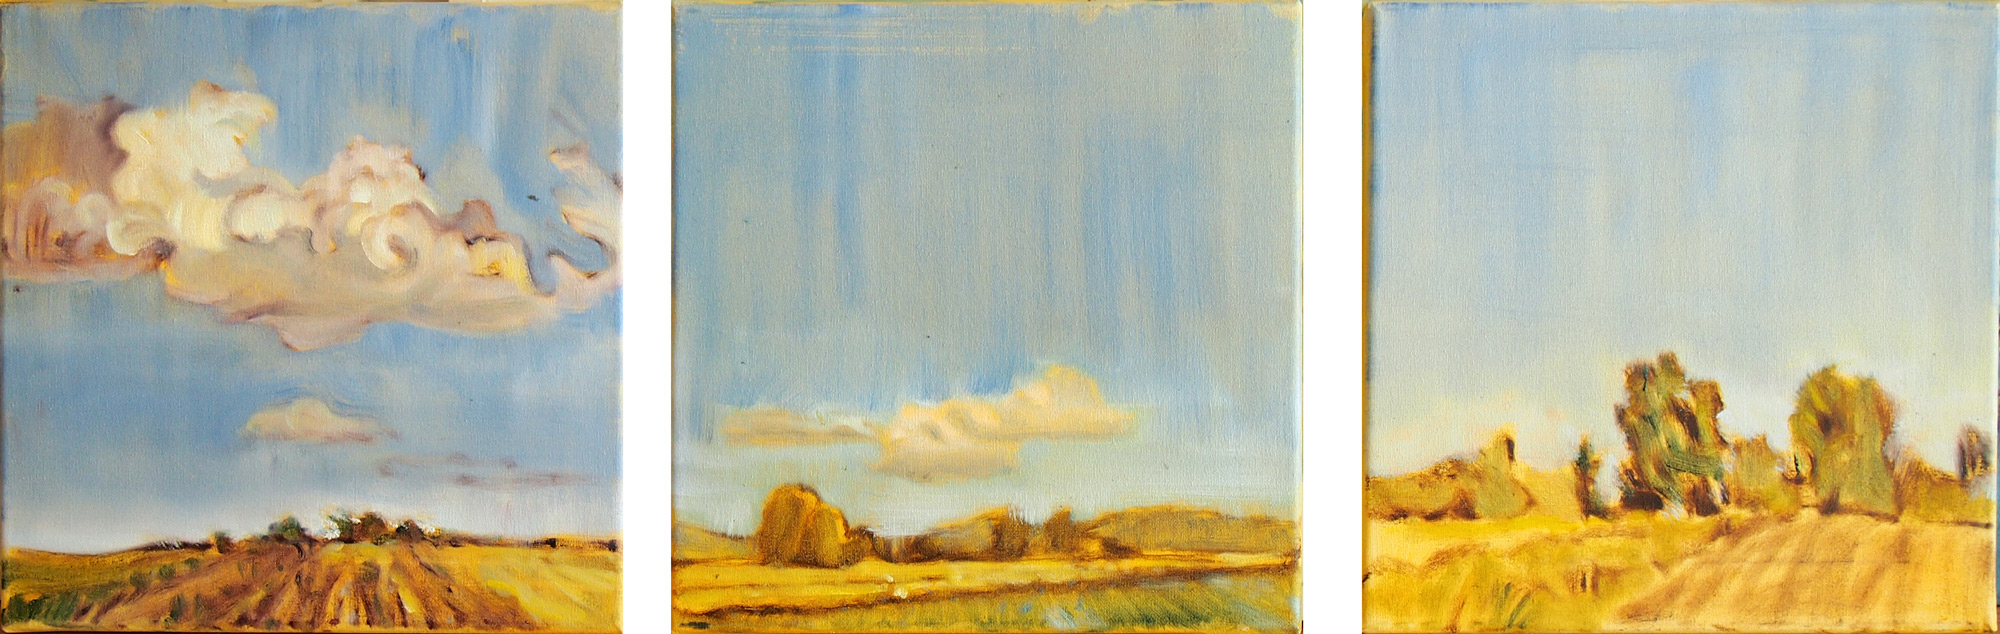 Landschaftsmalerei, en plein air, Freilichtmalerei, Felder, Wolken, Öl auf Leinwand, Tanja Leodolter, Künstlerin